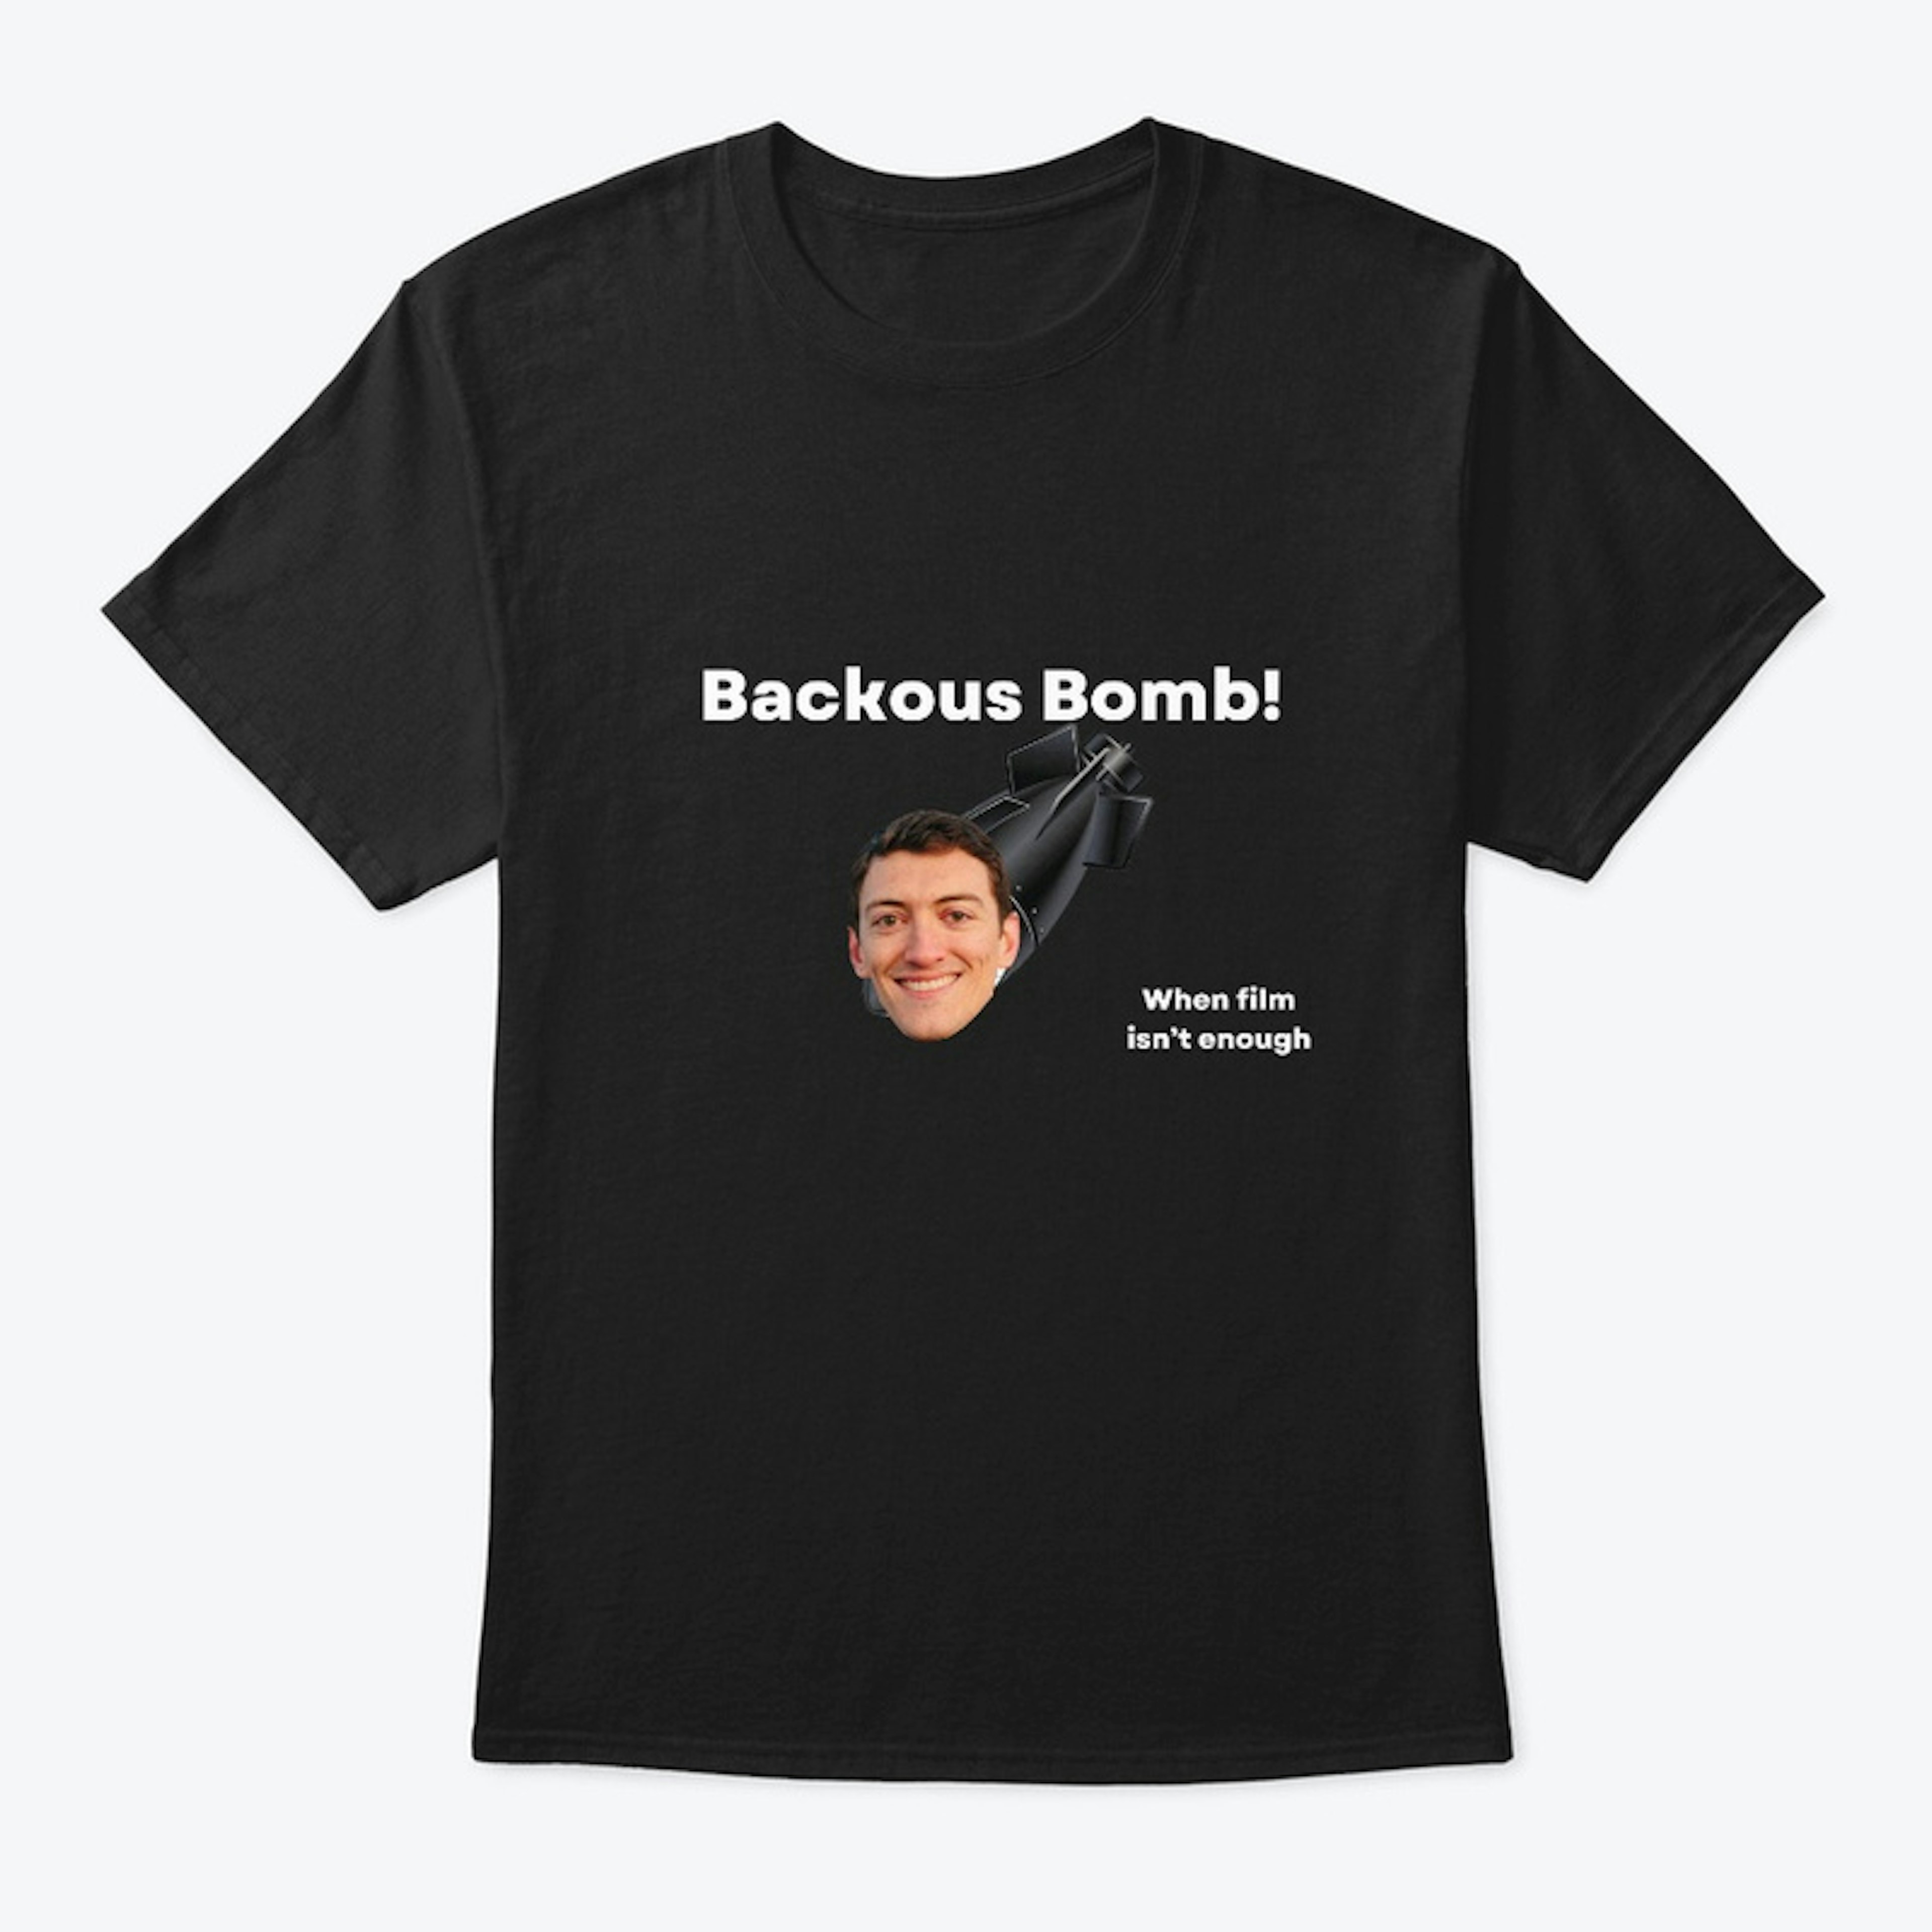 Backous Bomb!